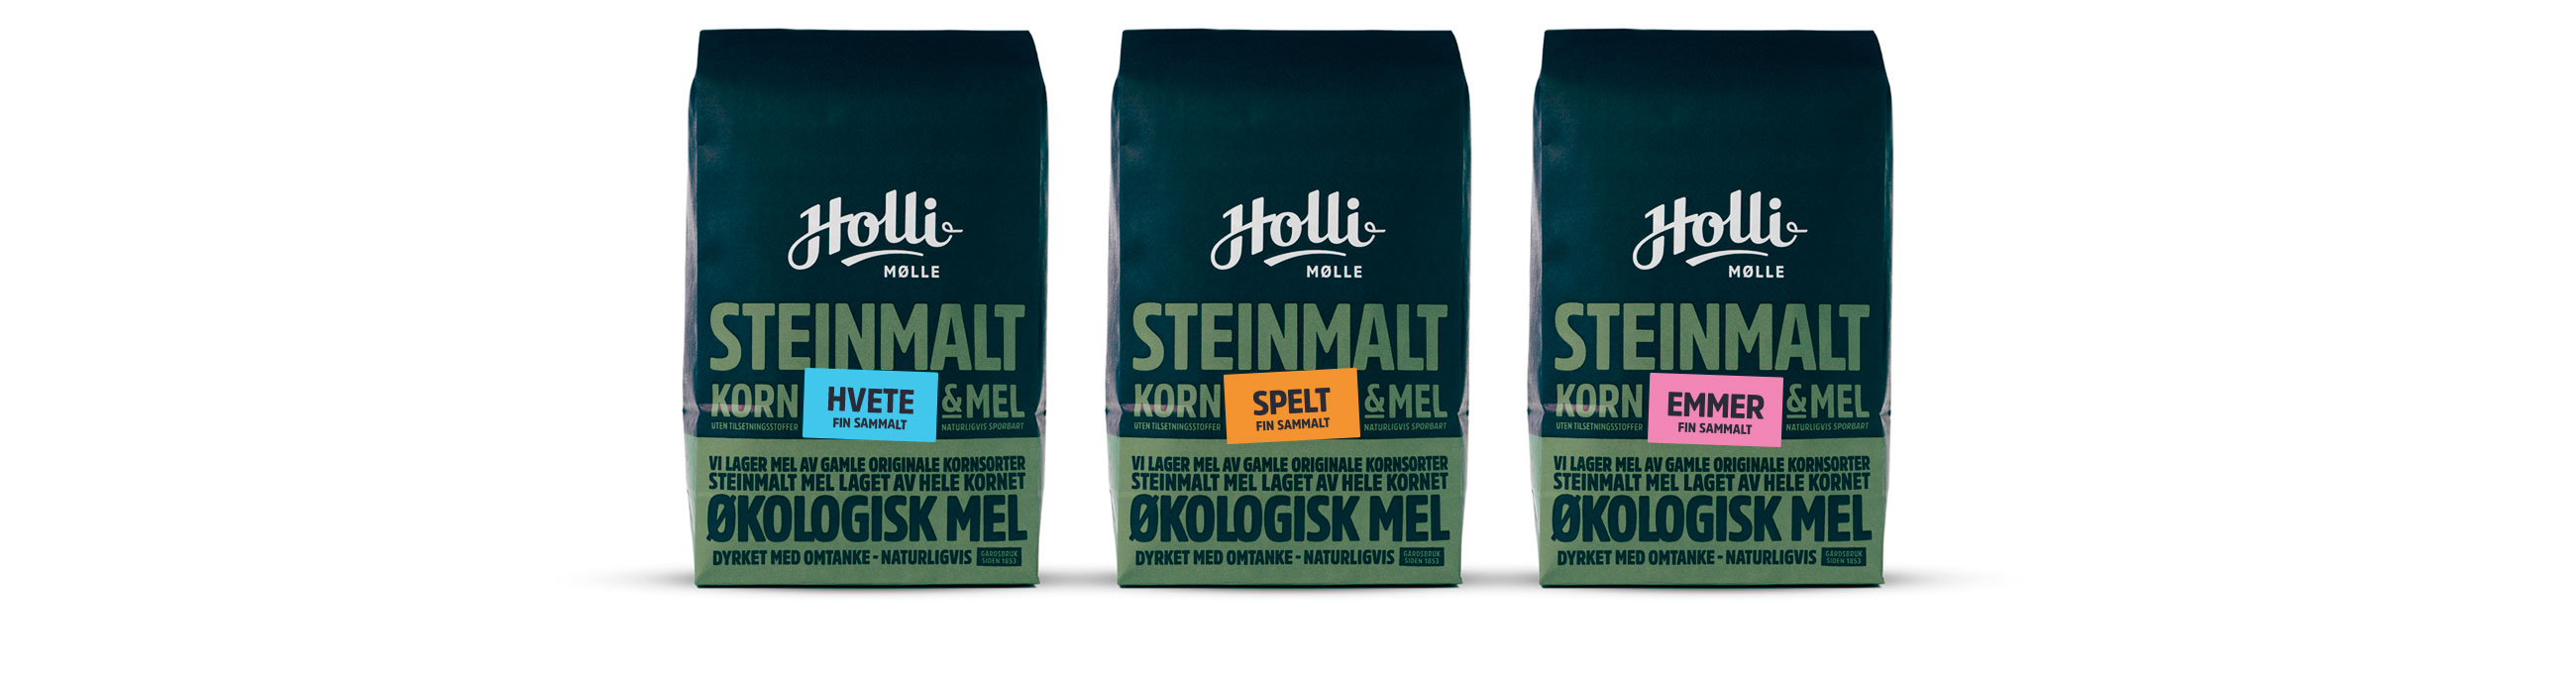 Holli Mølle fin sammalt hvete, spelt og emmer. Emballasje packaging design.